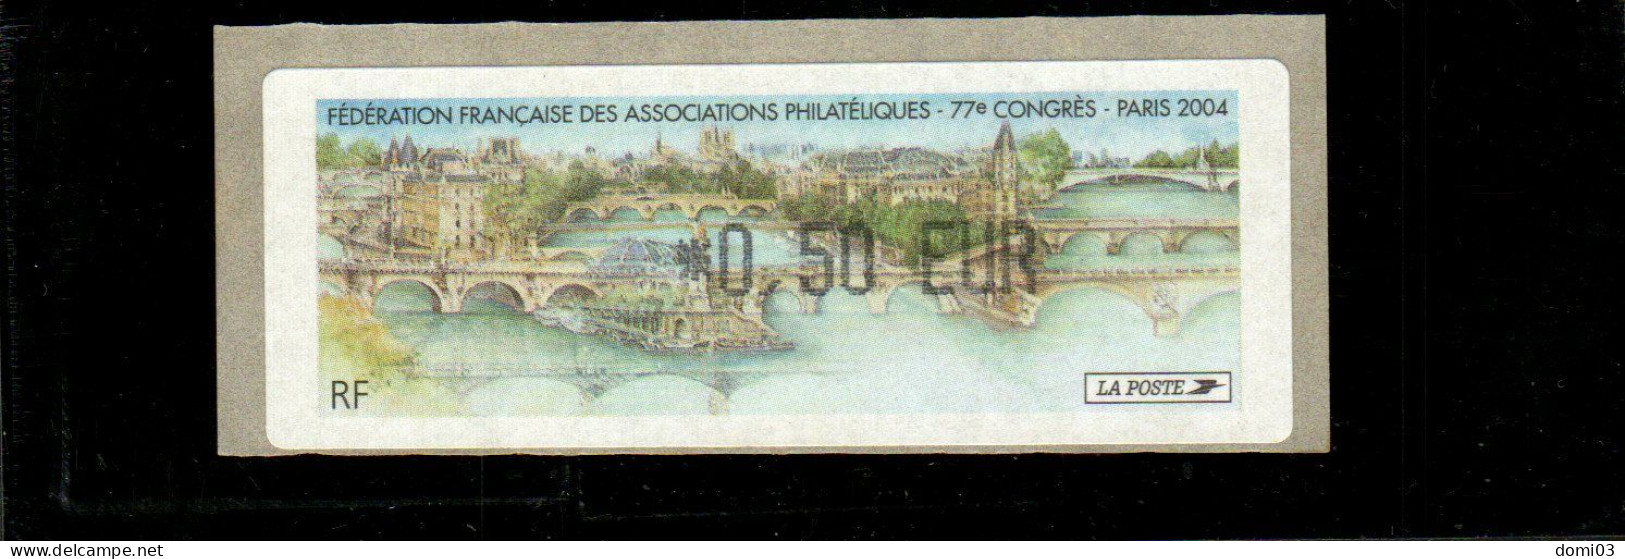 77è Congrès FFAP Paris 2004 - 1999-2009 Geïllustreerde Frankeervignetten